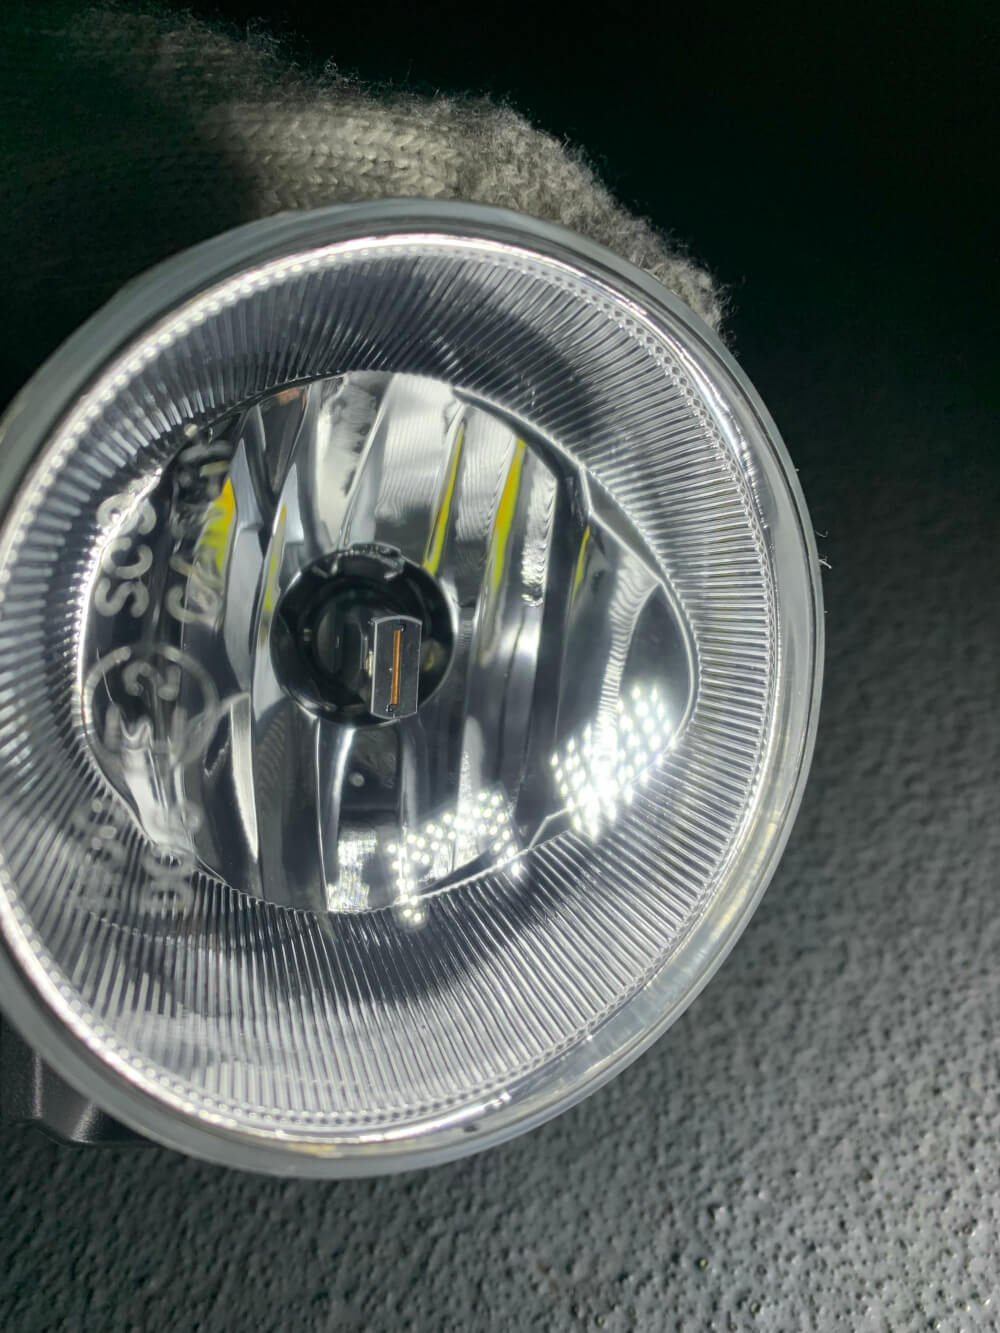 アルファード30後期の純正LEDフォグを2色切り替えLED化【交換方法 